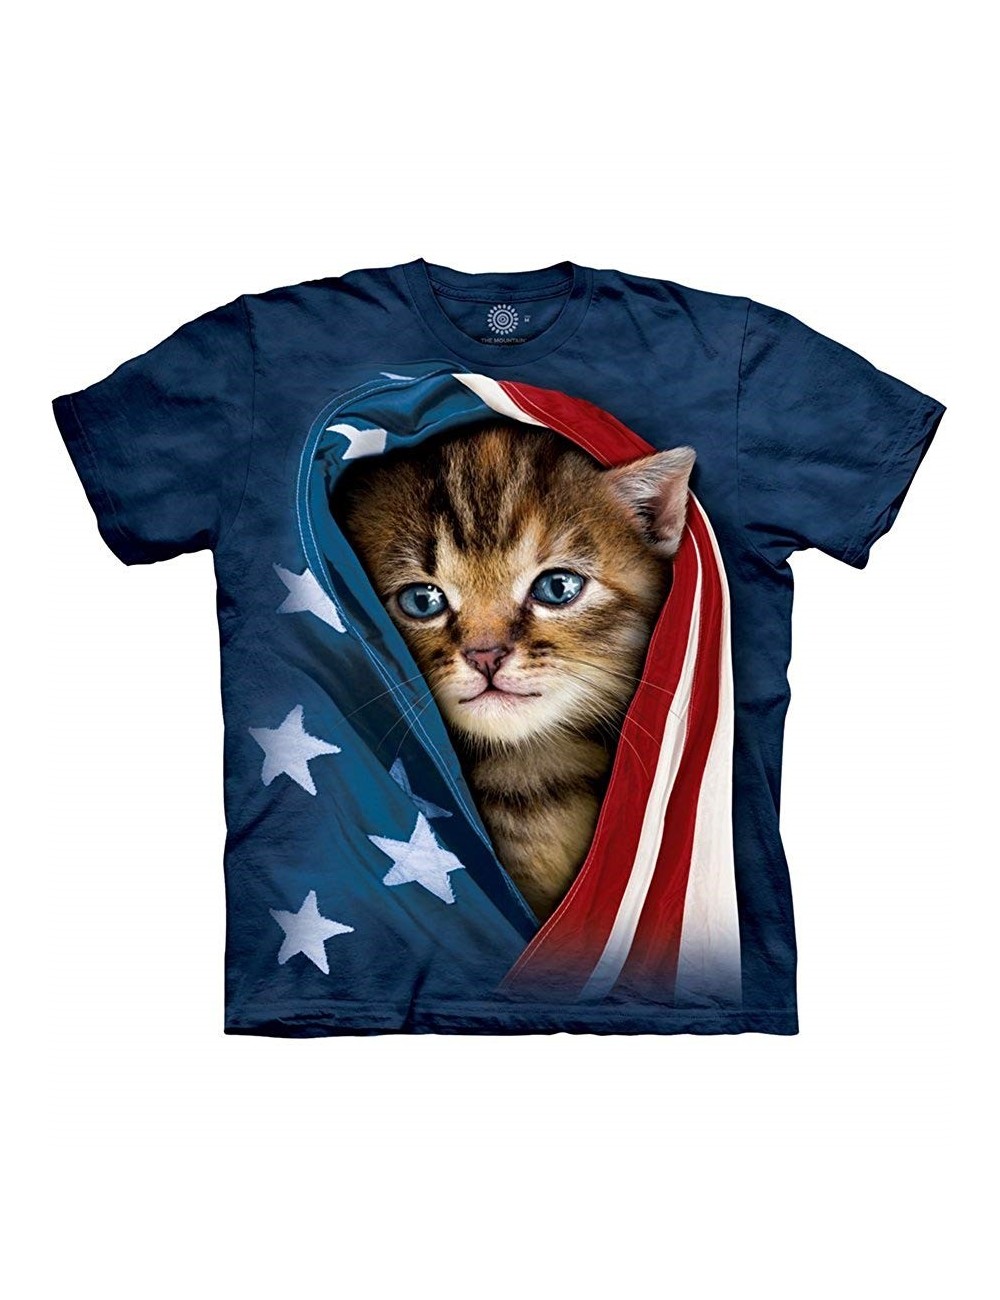 Tricou Patriotic Kitten The Mountain, copii 4-18 ani